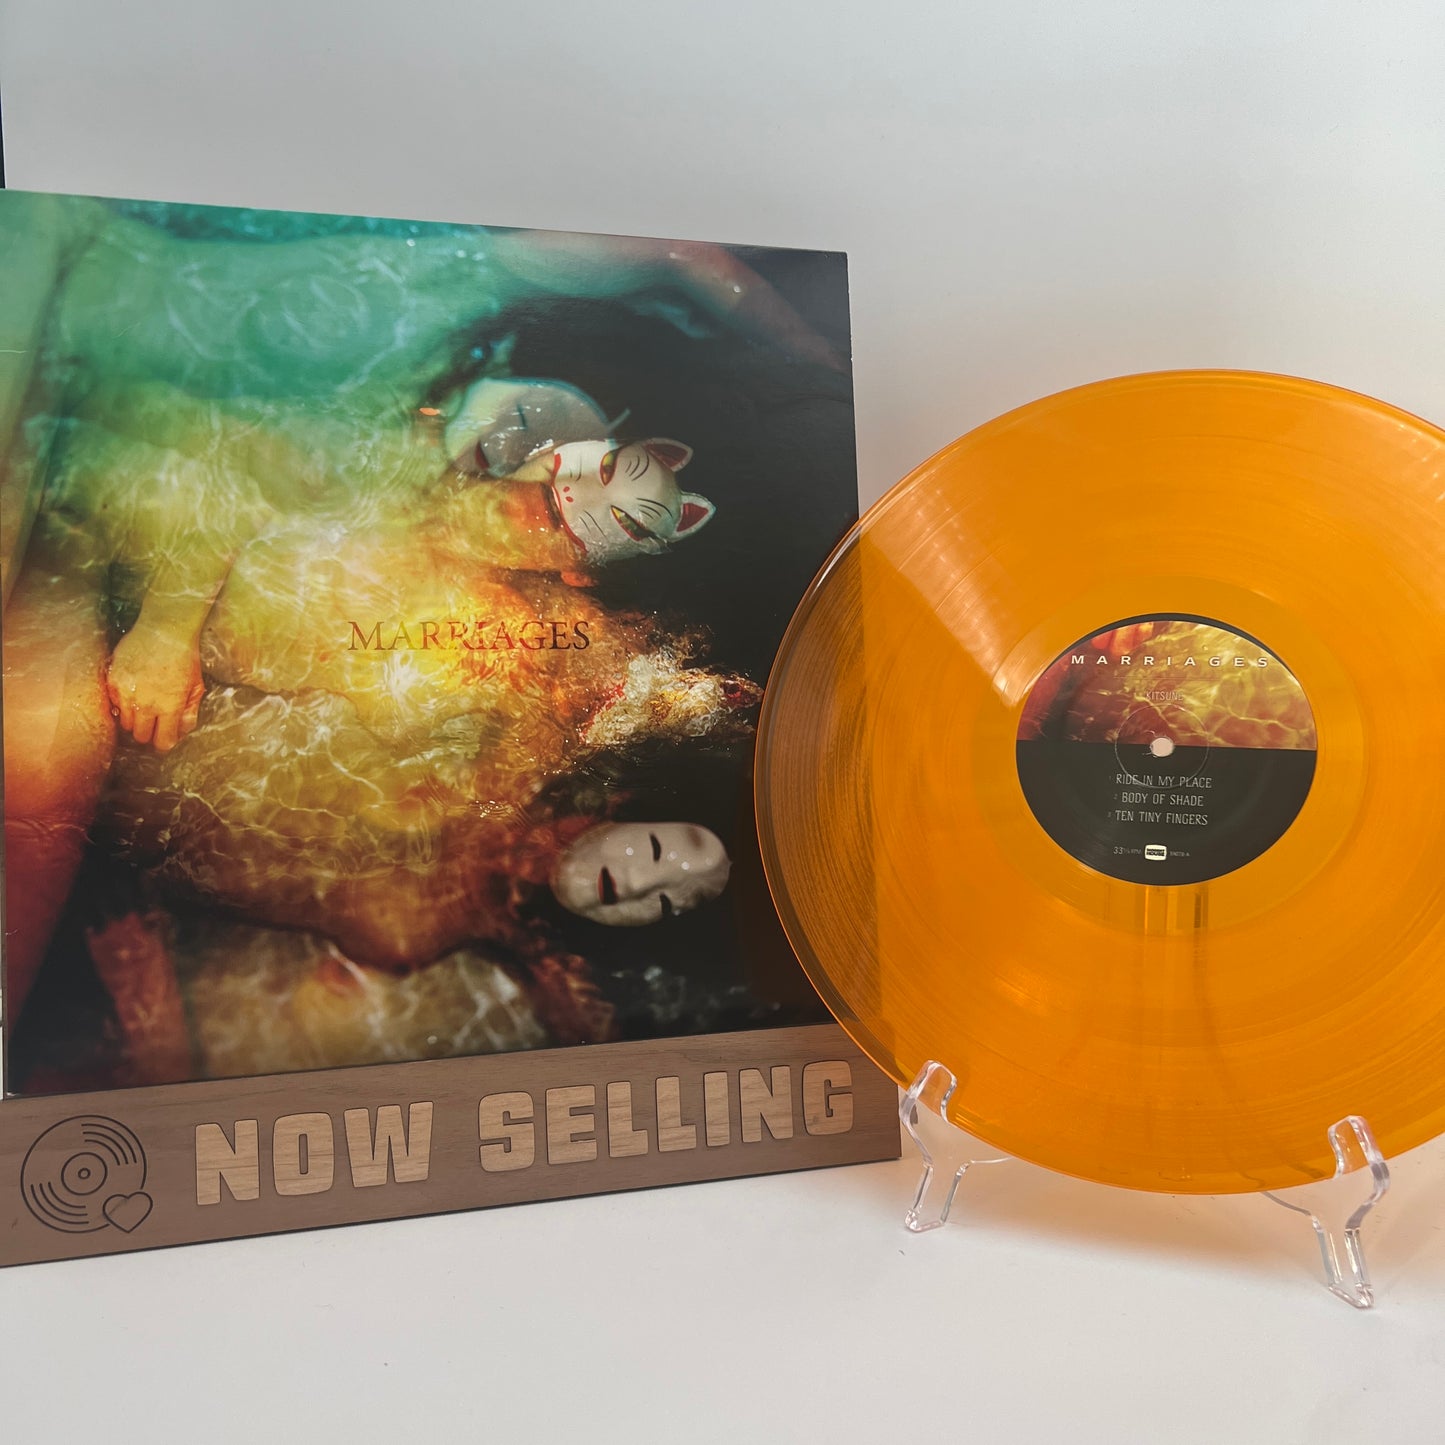 Marriages - Kitsune Vinyl EP Orange Translucent Emma Ruth Rundle